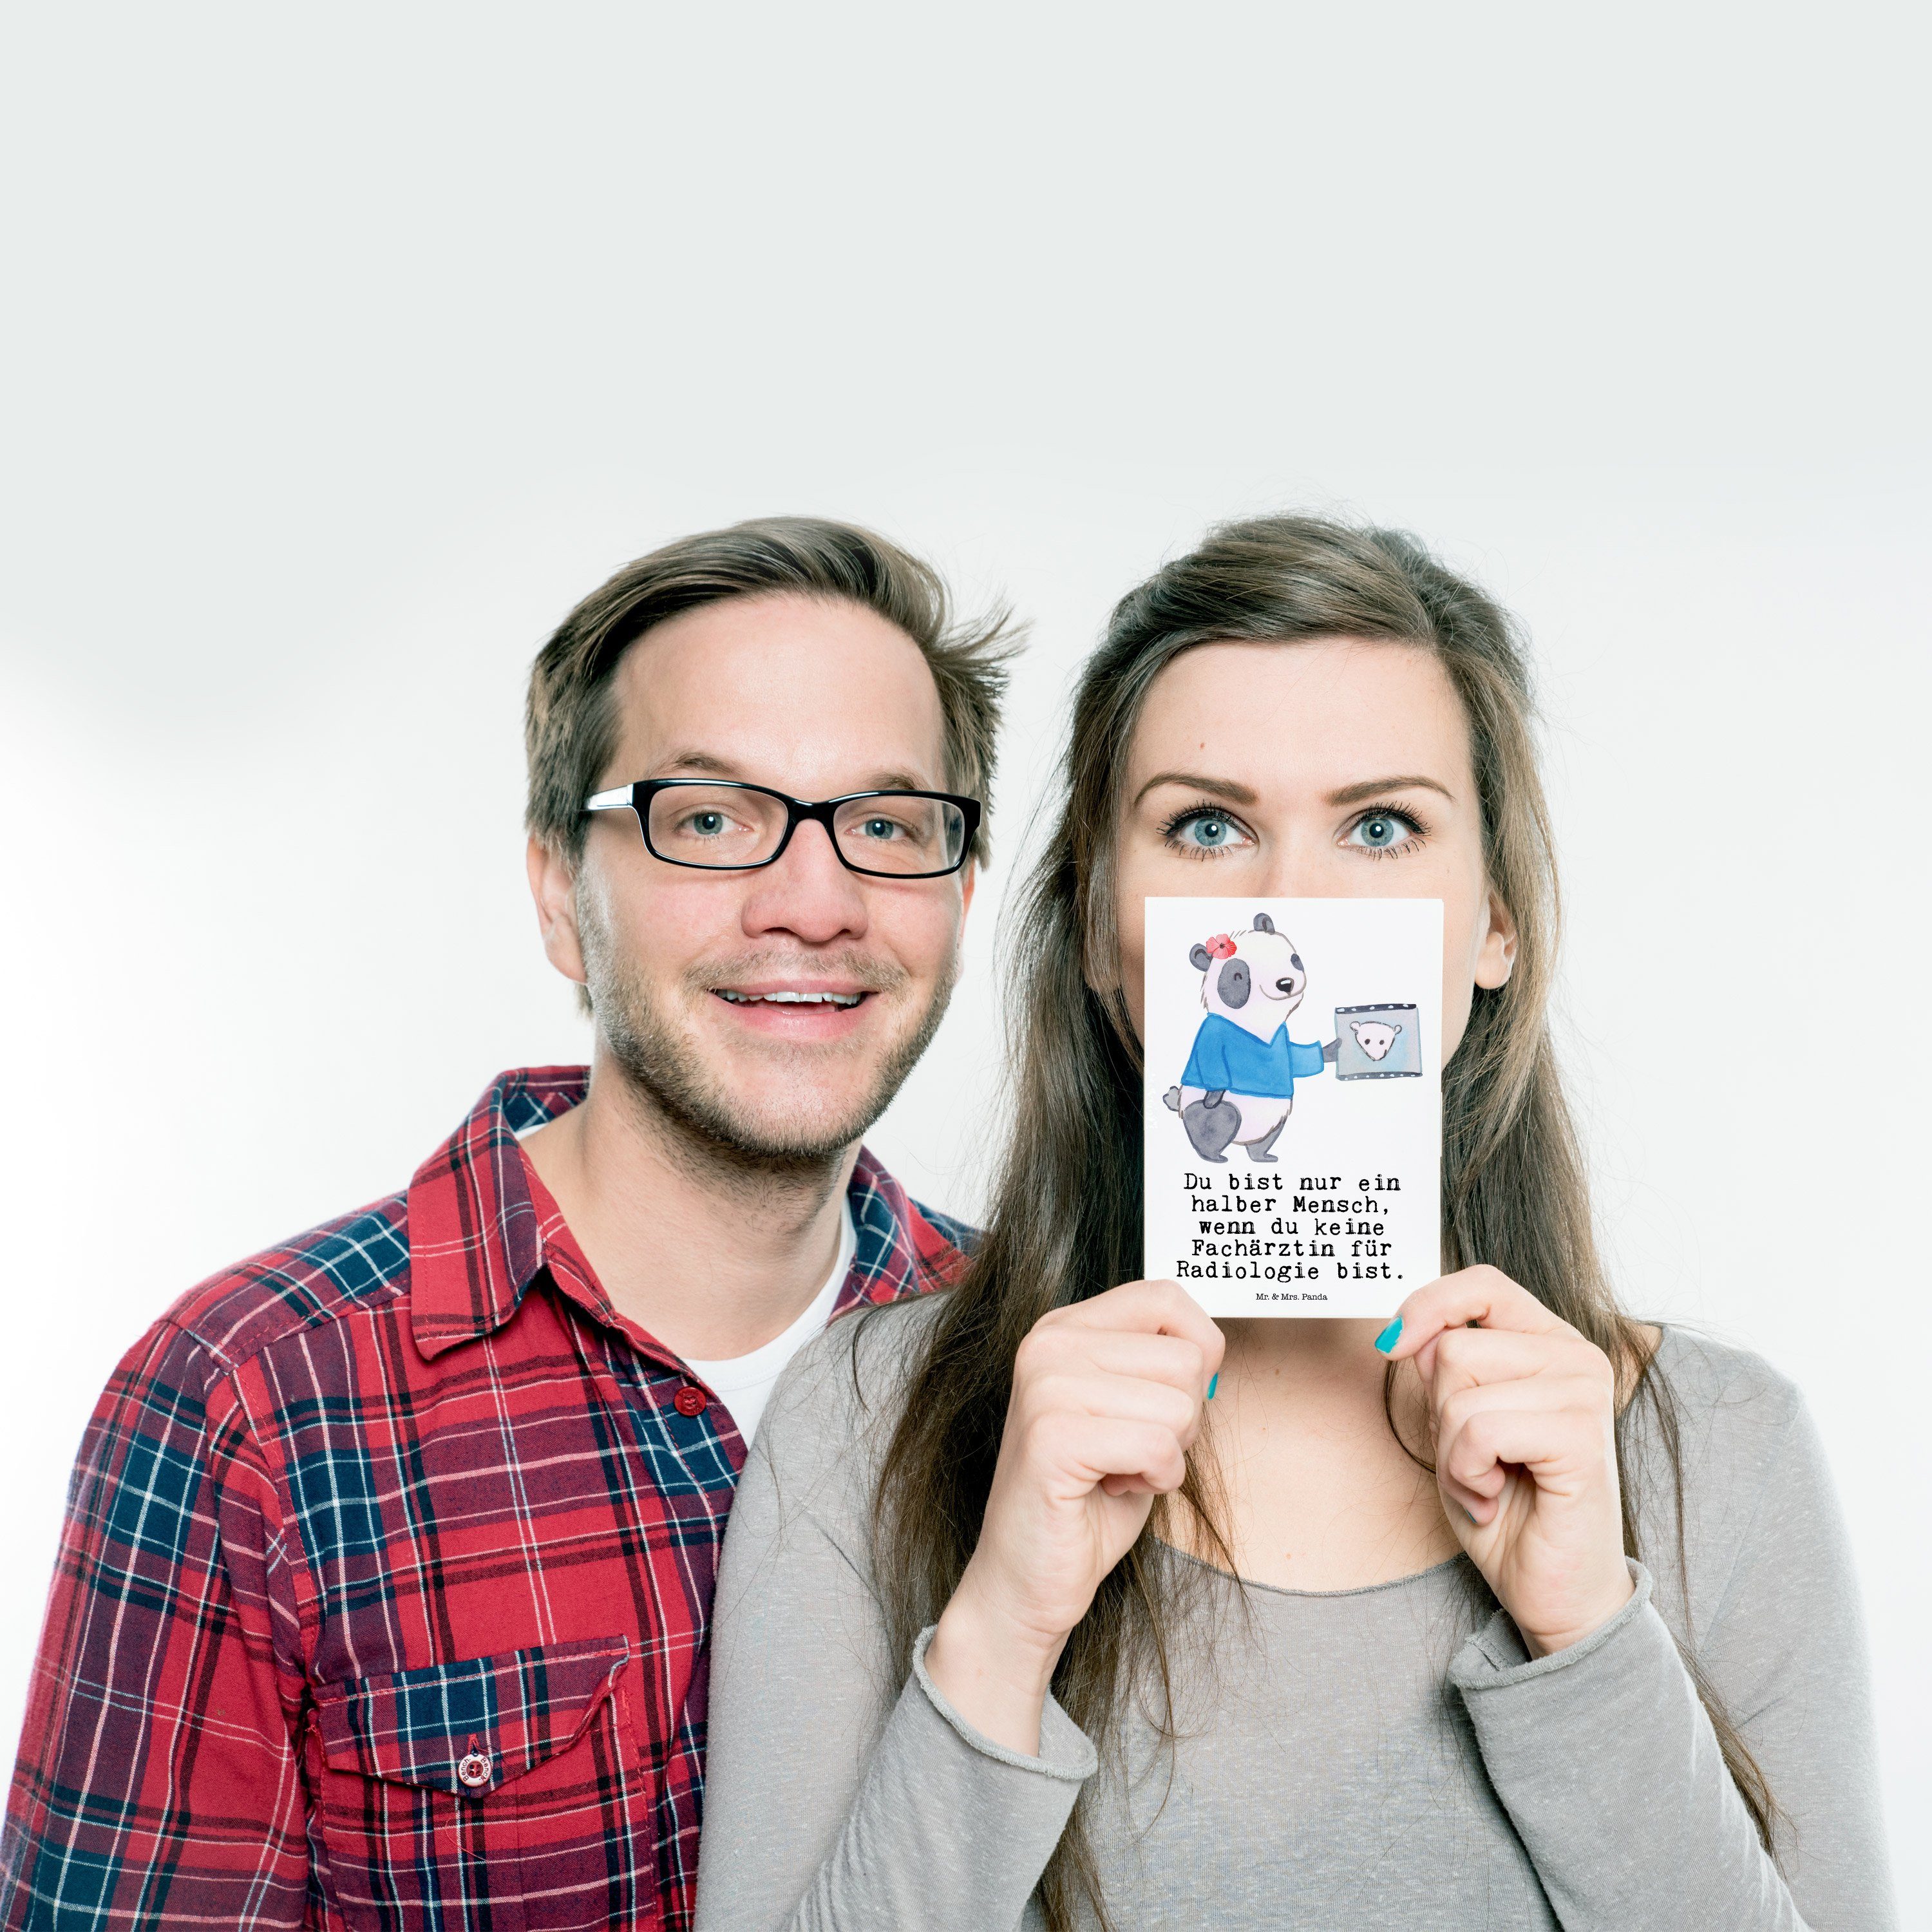 Mr. & Herz für Radiologie Weiß Geschenkkarte Postkarte - Mrs. mit Geschenk, - Fachärztin Panda